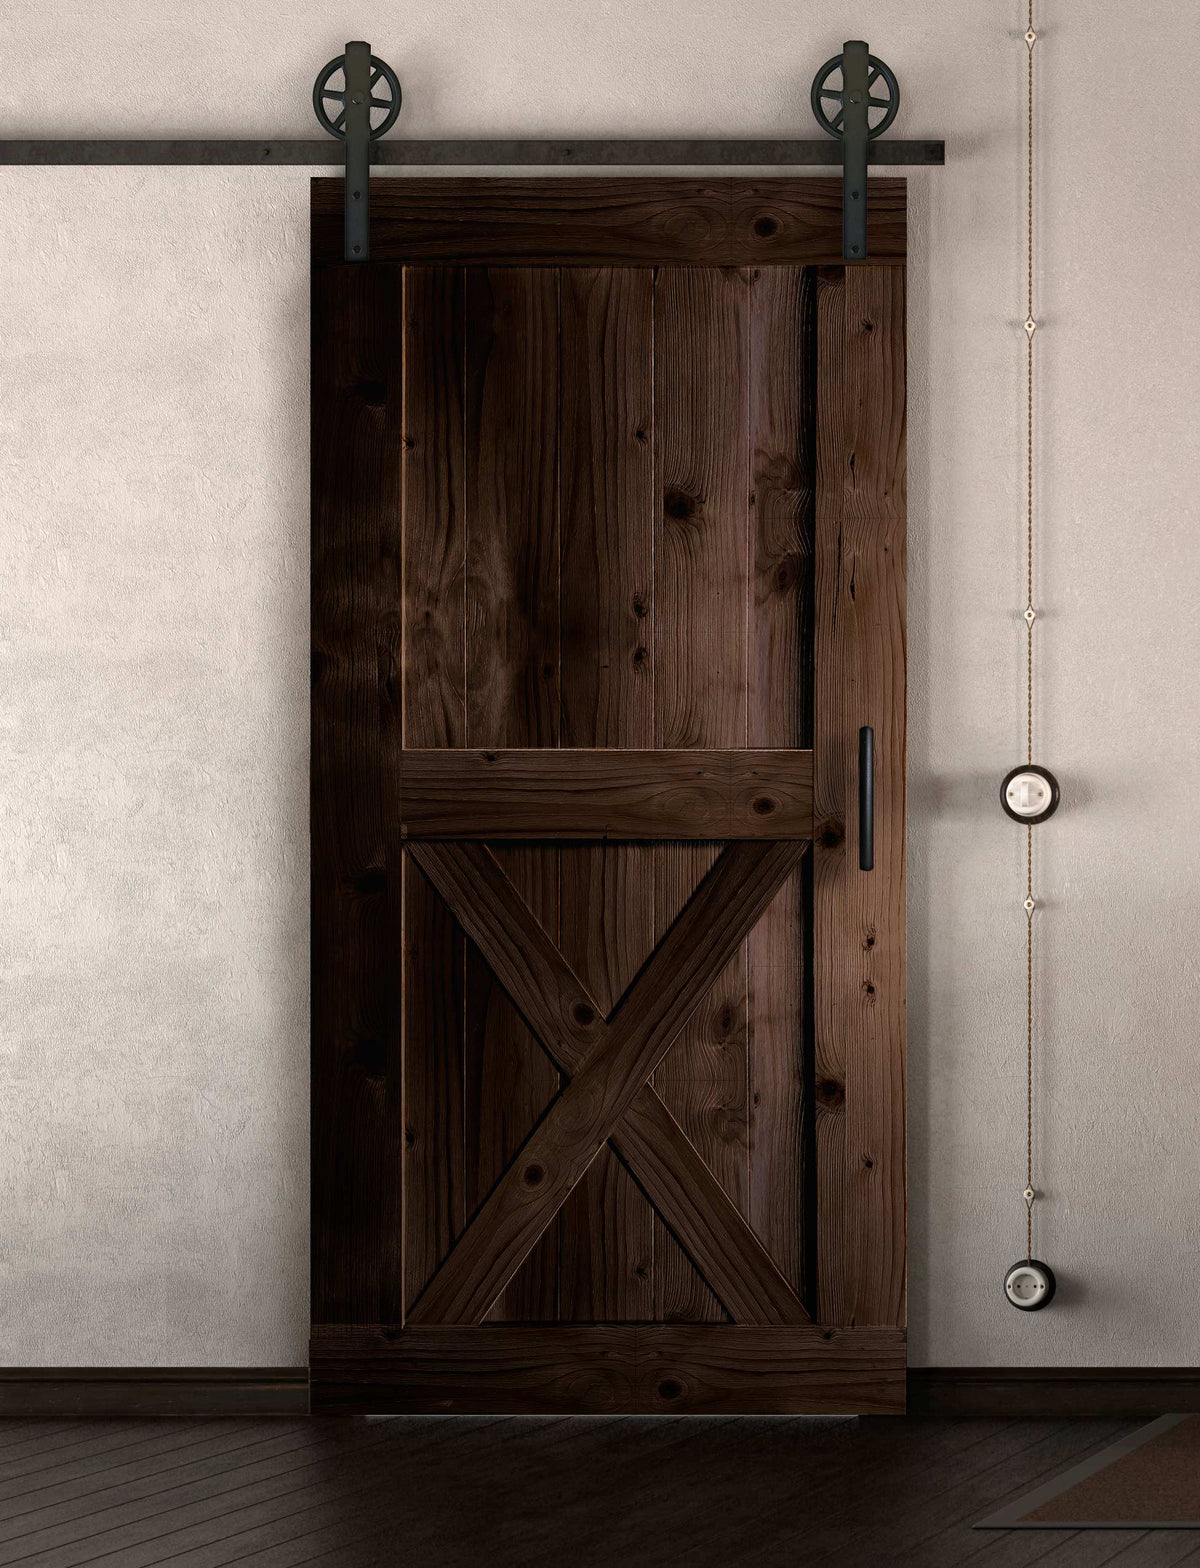 Schiebetür in Scheunentor Optik Modell X - Farmhouse Barn Door rustikal nach links öffnend / Muster nur Vorderseite / Nuss dunkel